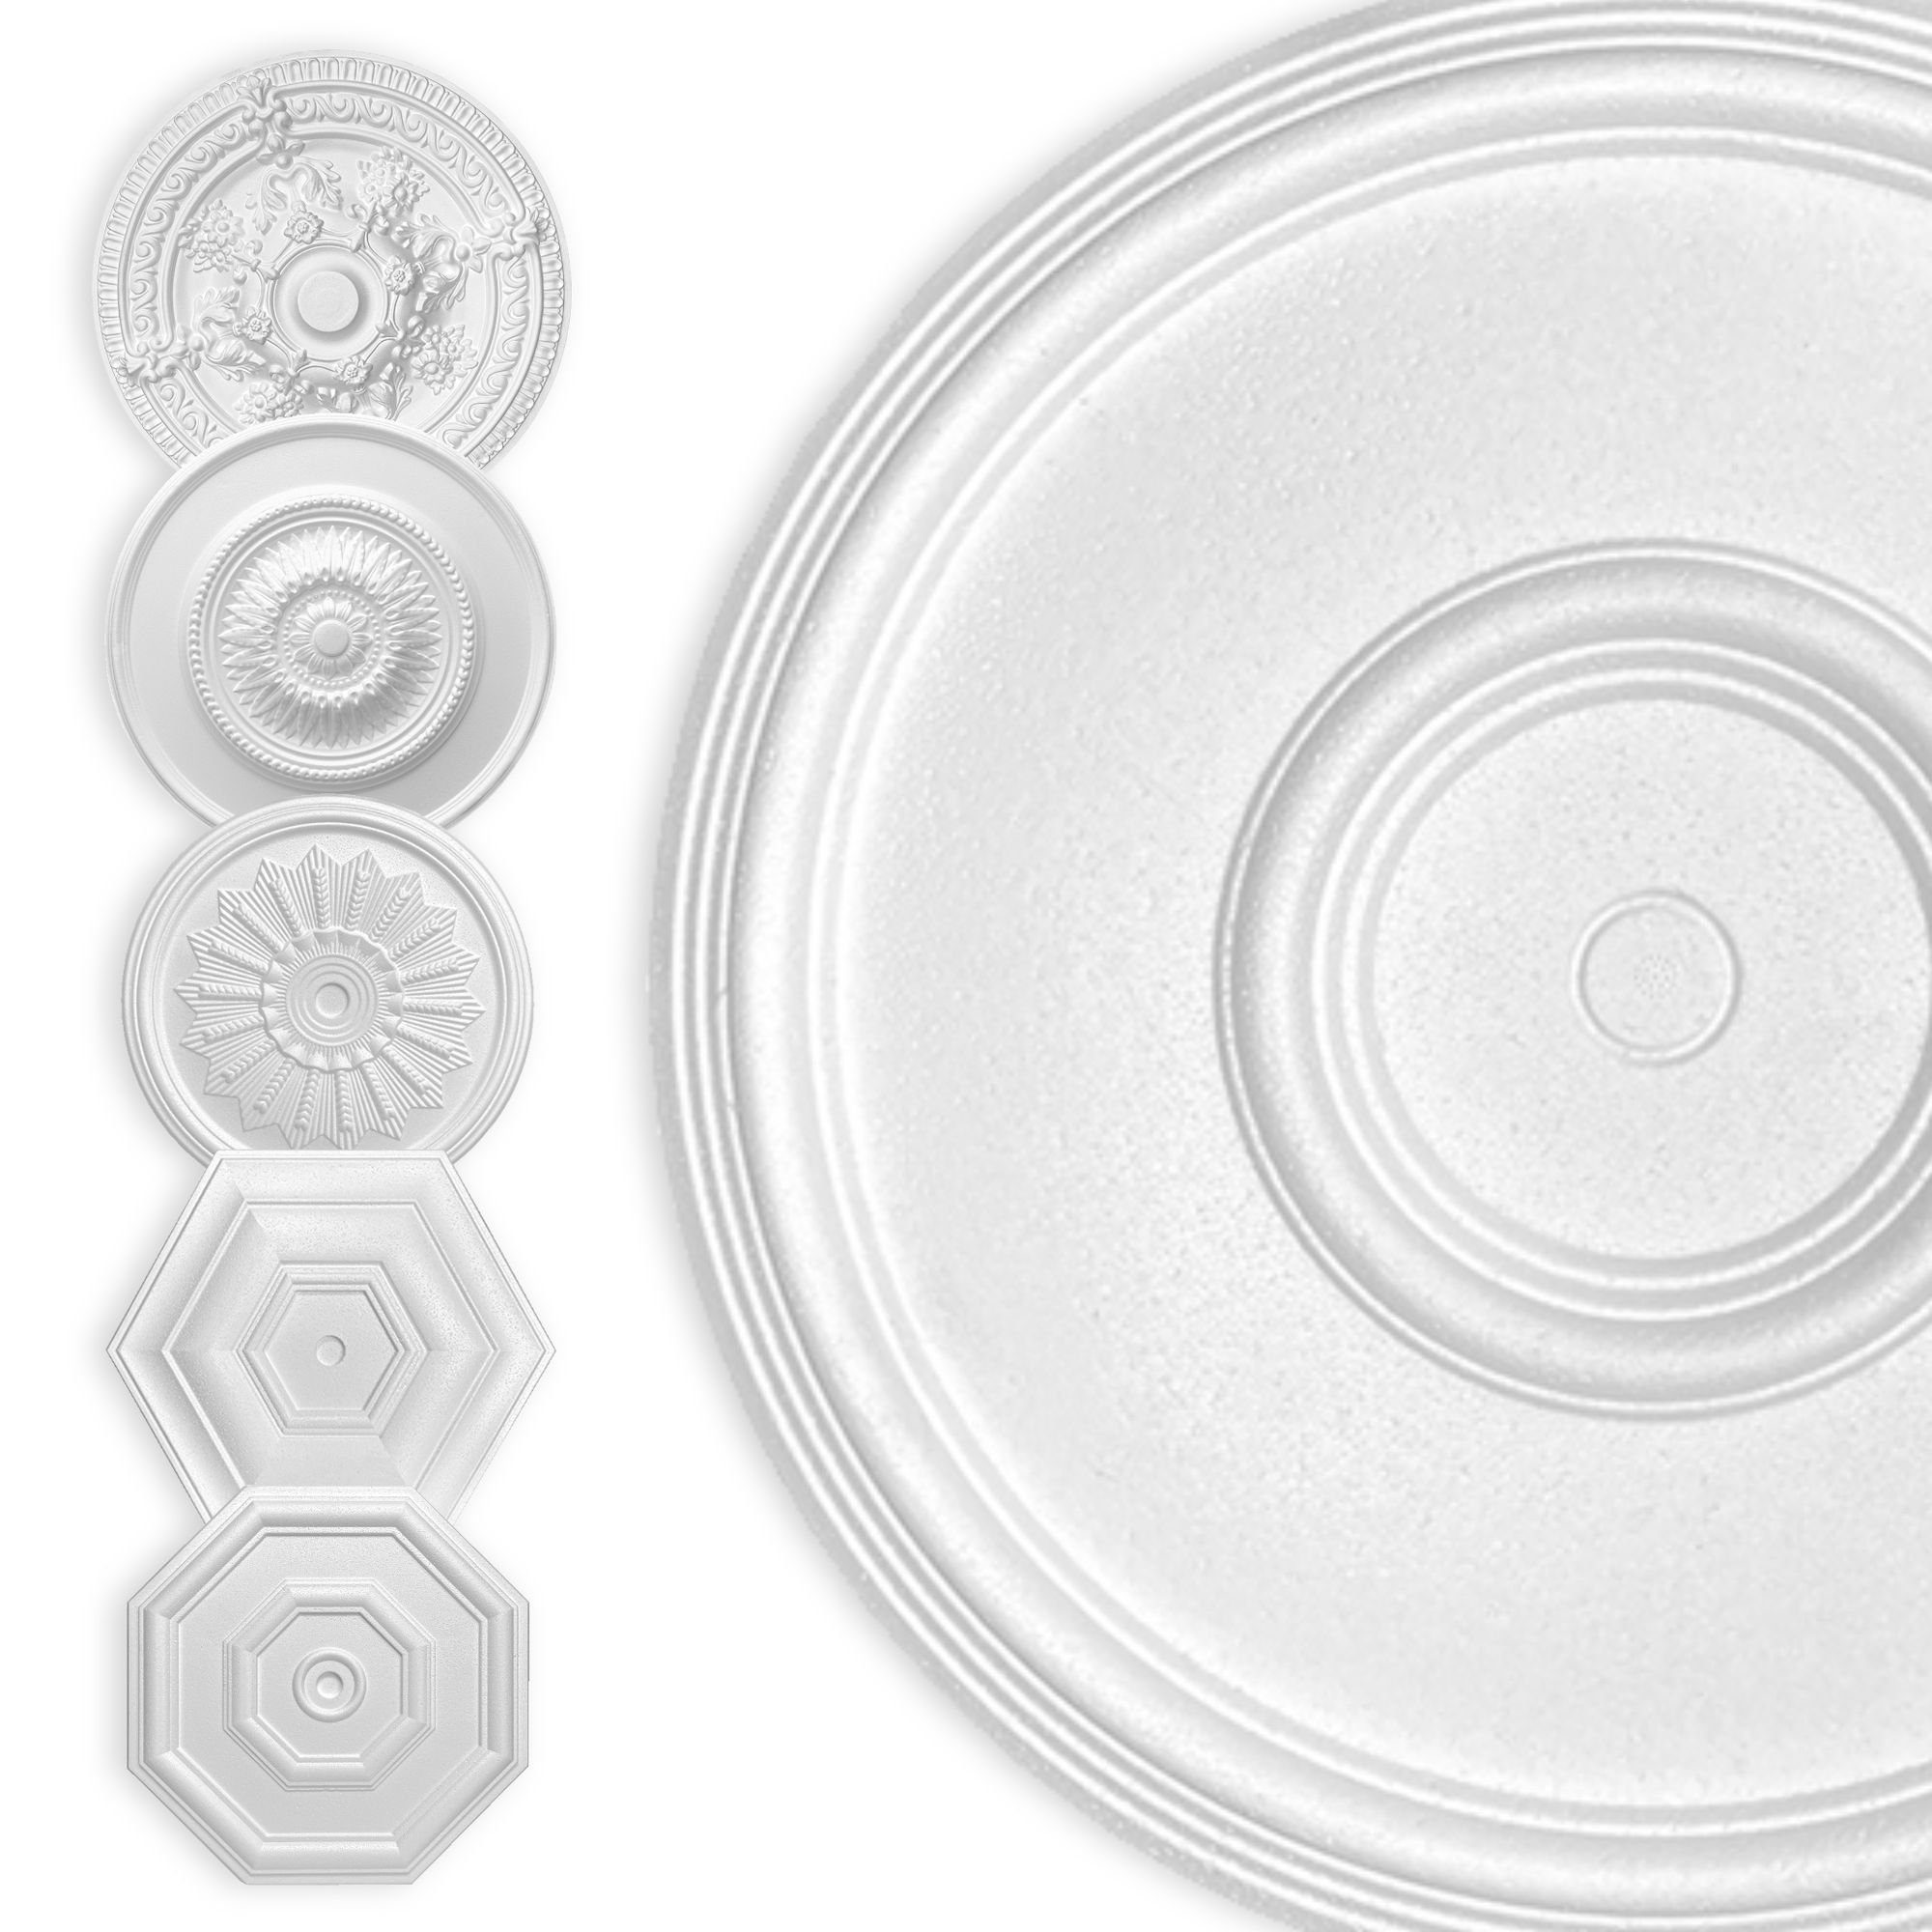 Hexim Wanddekoobjekt Kreis 40cm (HEXIM Stuckrosette aus EPS Styropor weiß - Deckenrosette weiß, Zierelement, Stuck (Hexim) Wanddeko Wohnzimmer Decke Polystyrol)